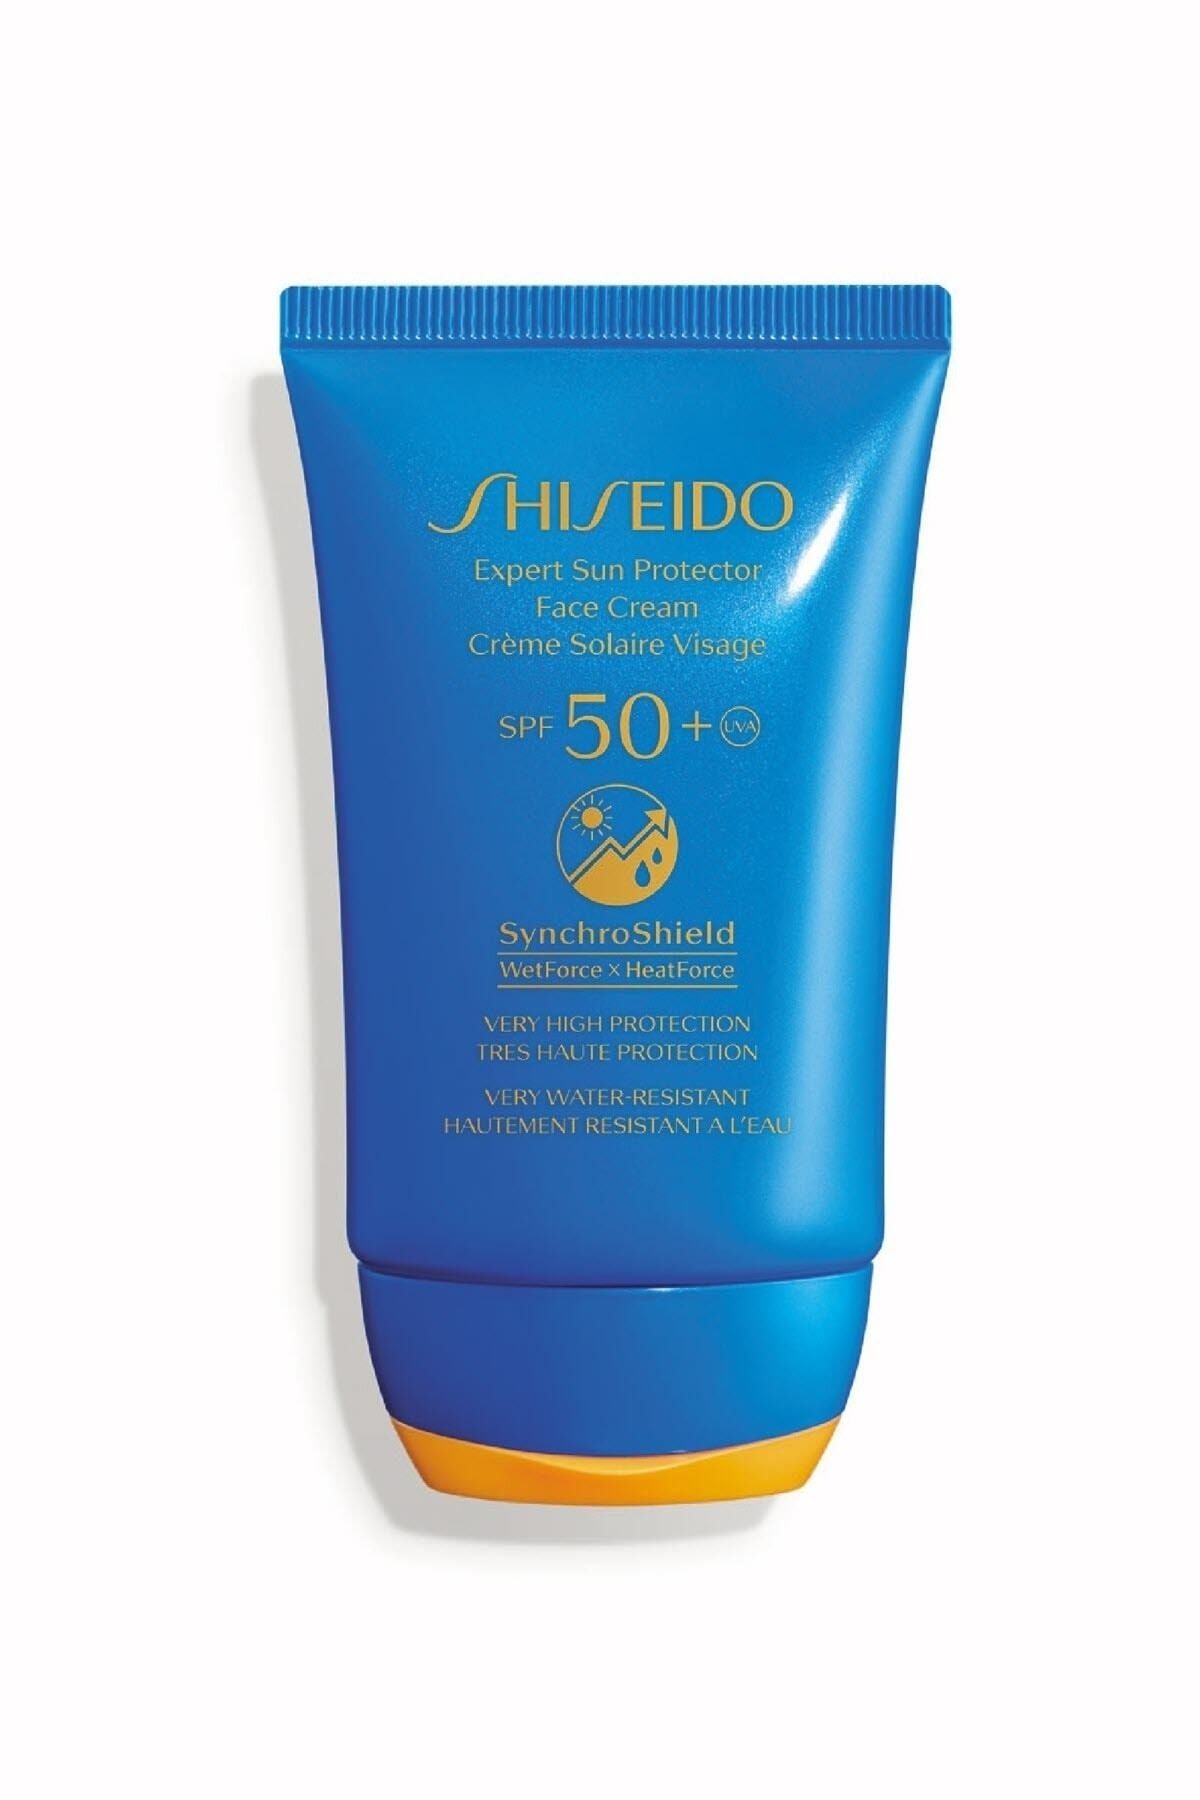 Shiseido Güneş Kremi - Expert Sun Protector Cream SPF 50 768614156727